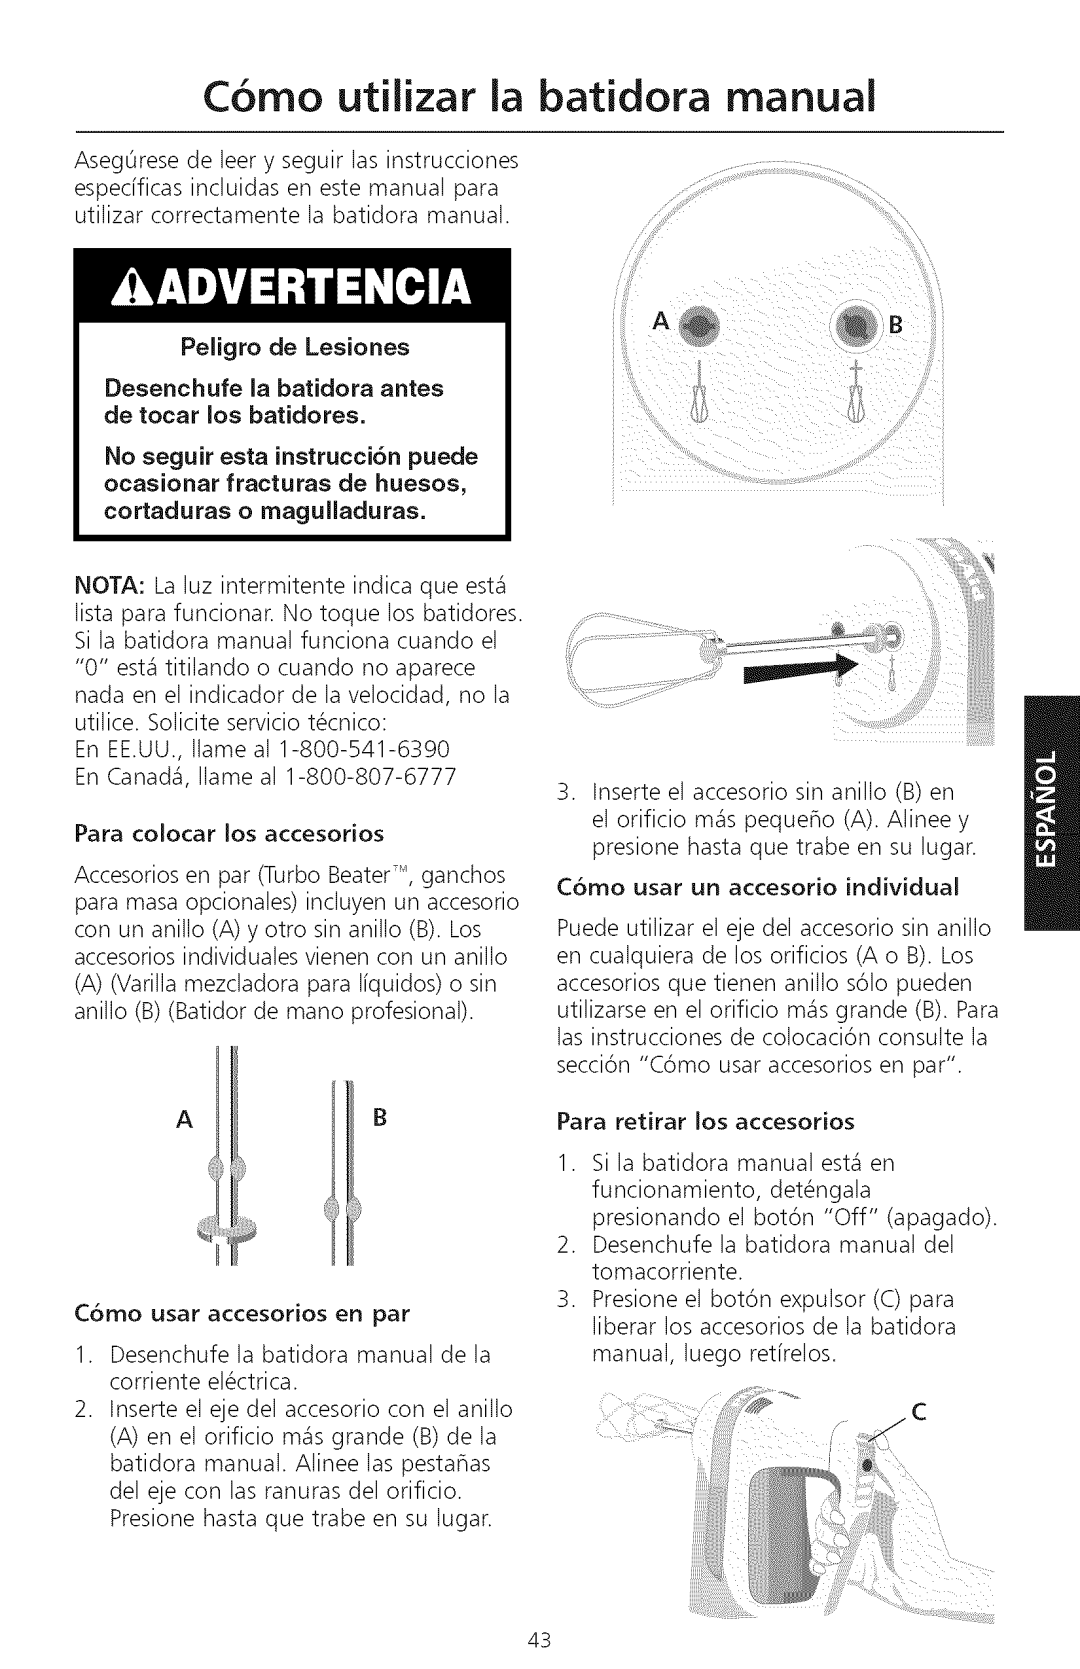 KitchenAid KHM720, KHM920 Como utilizar la batidora manual, iiii!ili, Peligro de Lesiones 